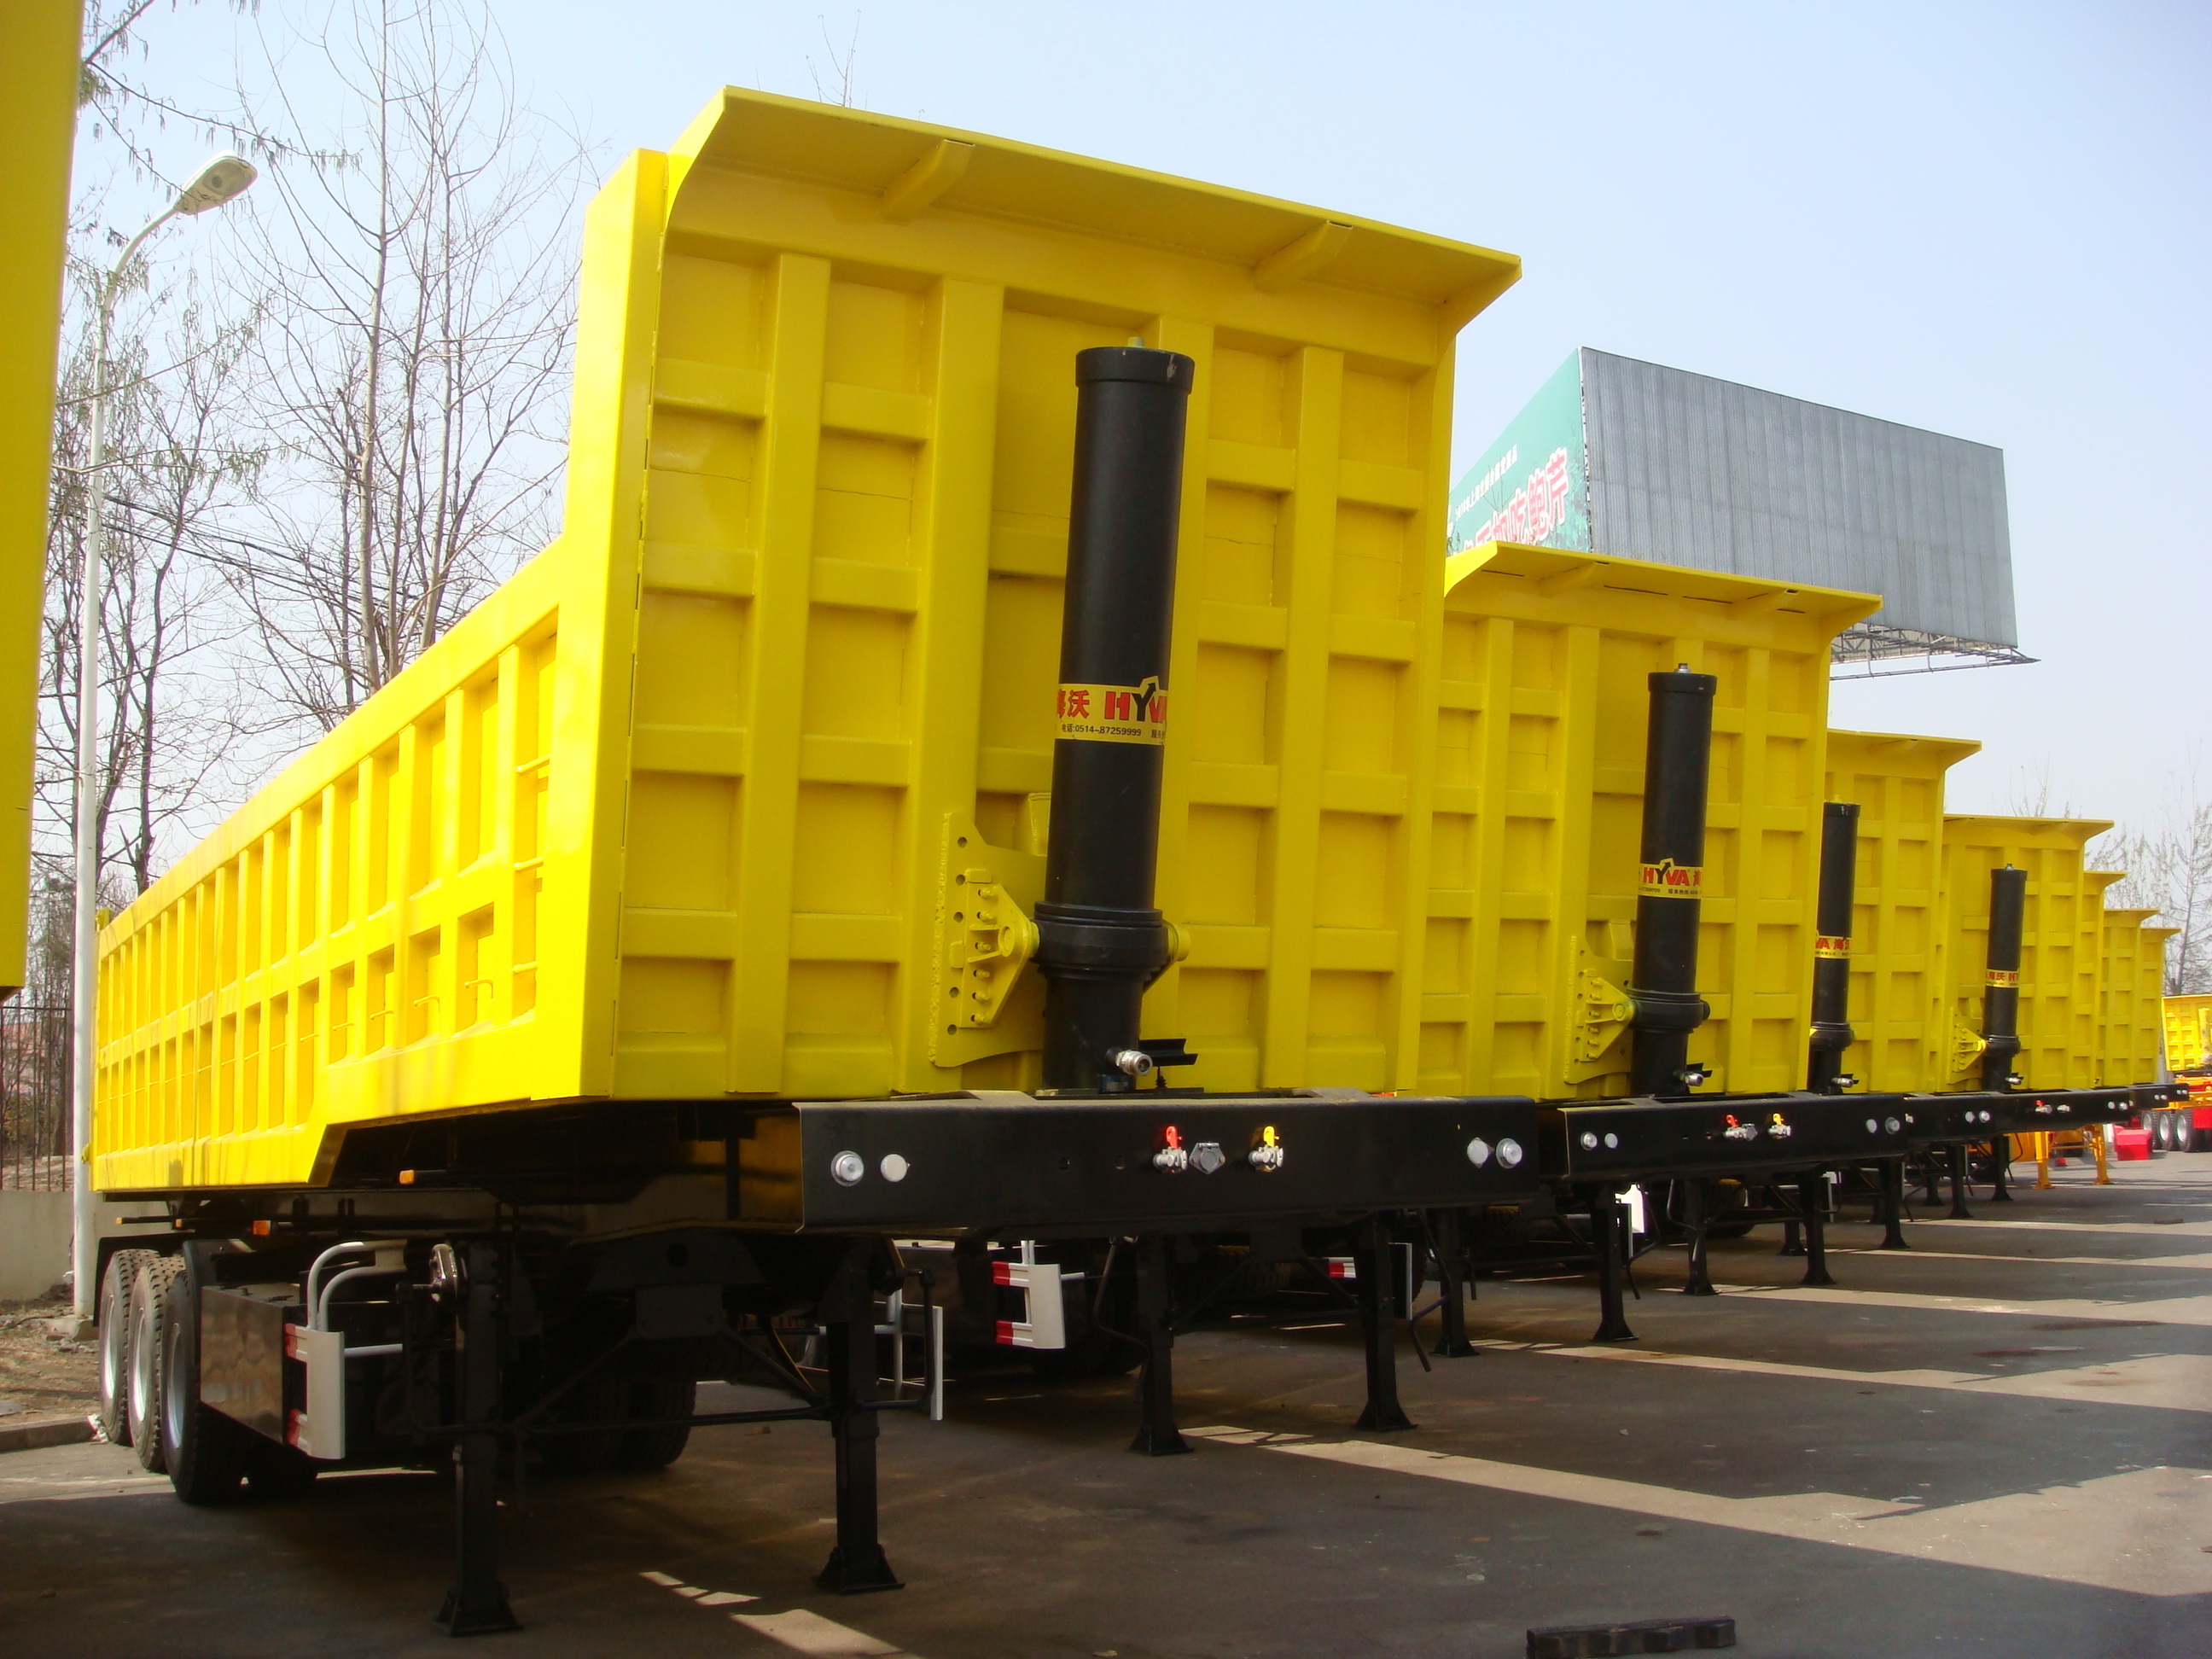 42 cbm Muldenkipper mit 3 BPW-Achsen und hydraulischem Heckauswurfsystem für 80 Tonnen